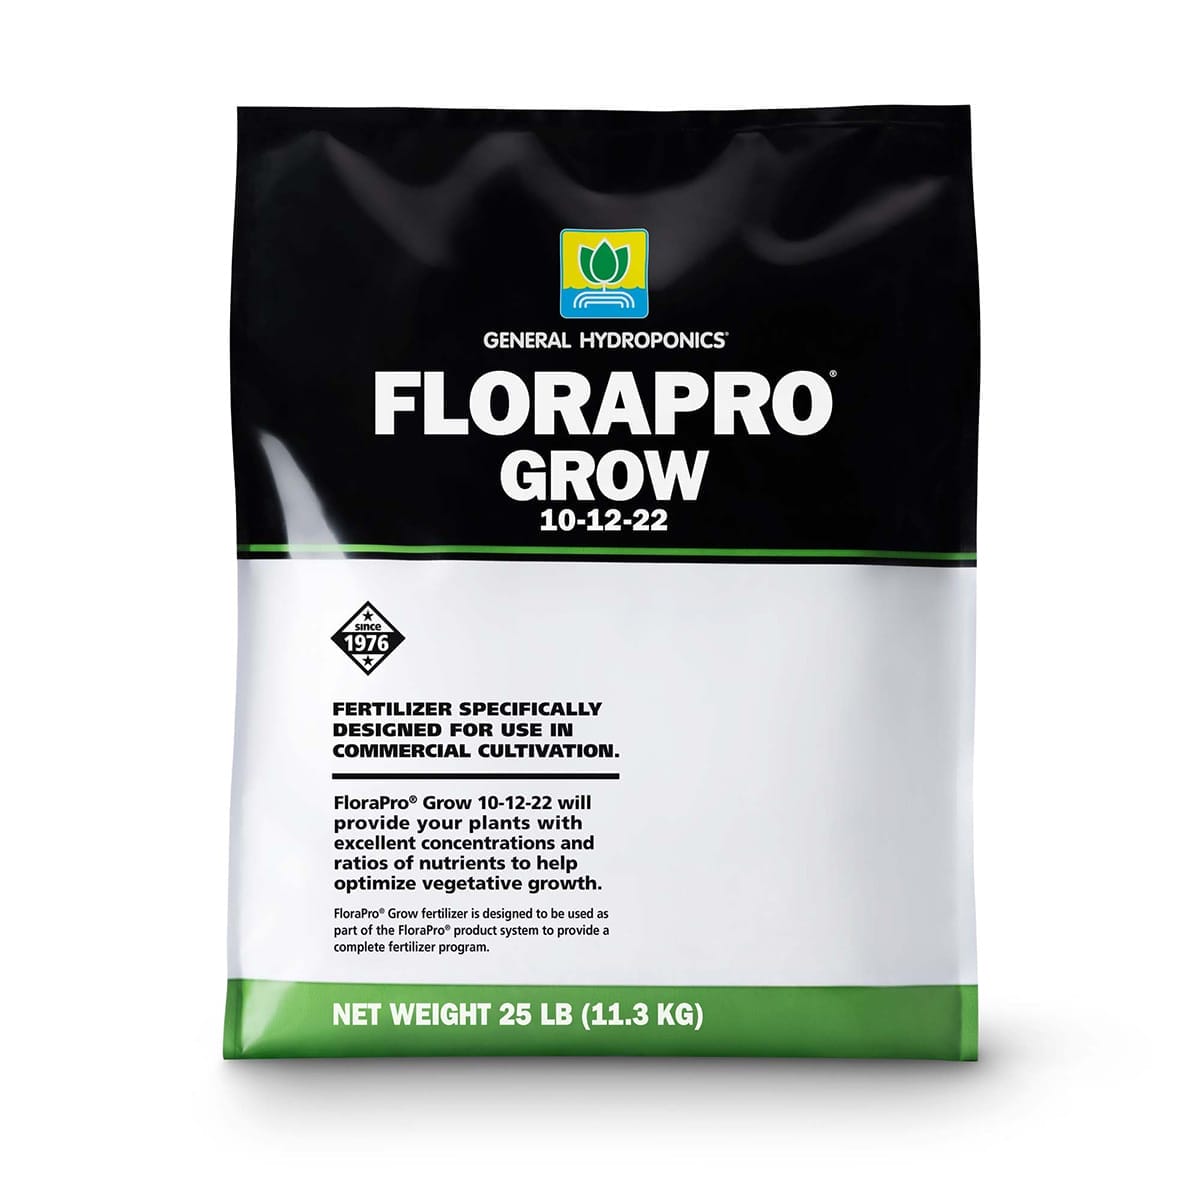 General Hydroponics FloraPro Grow 25lb